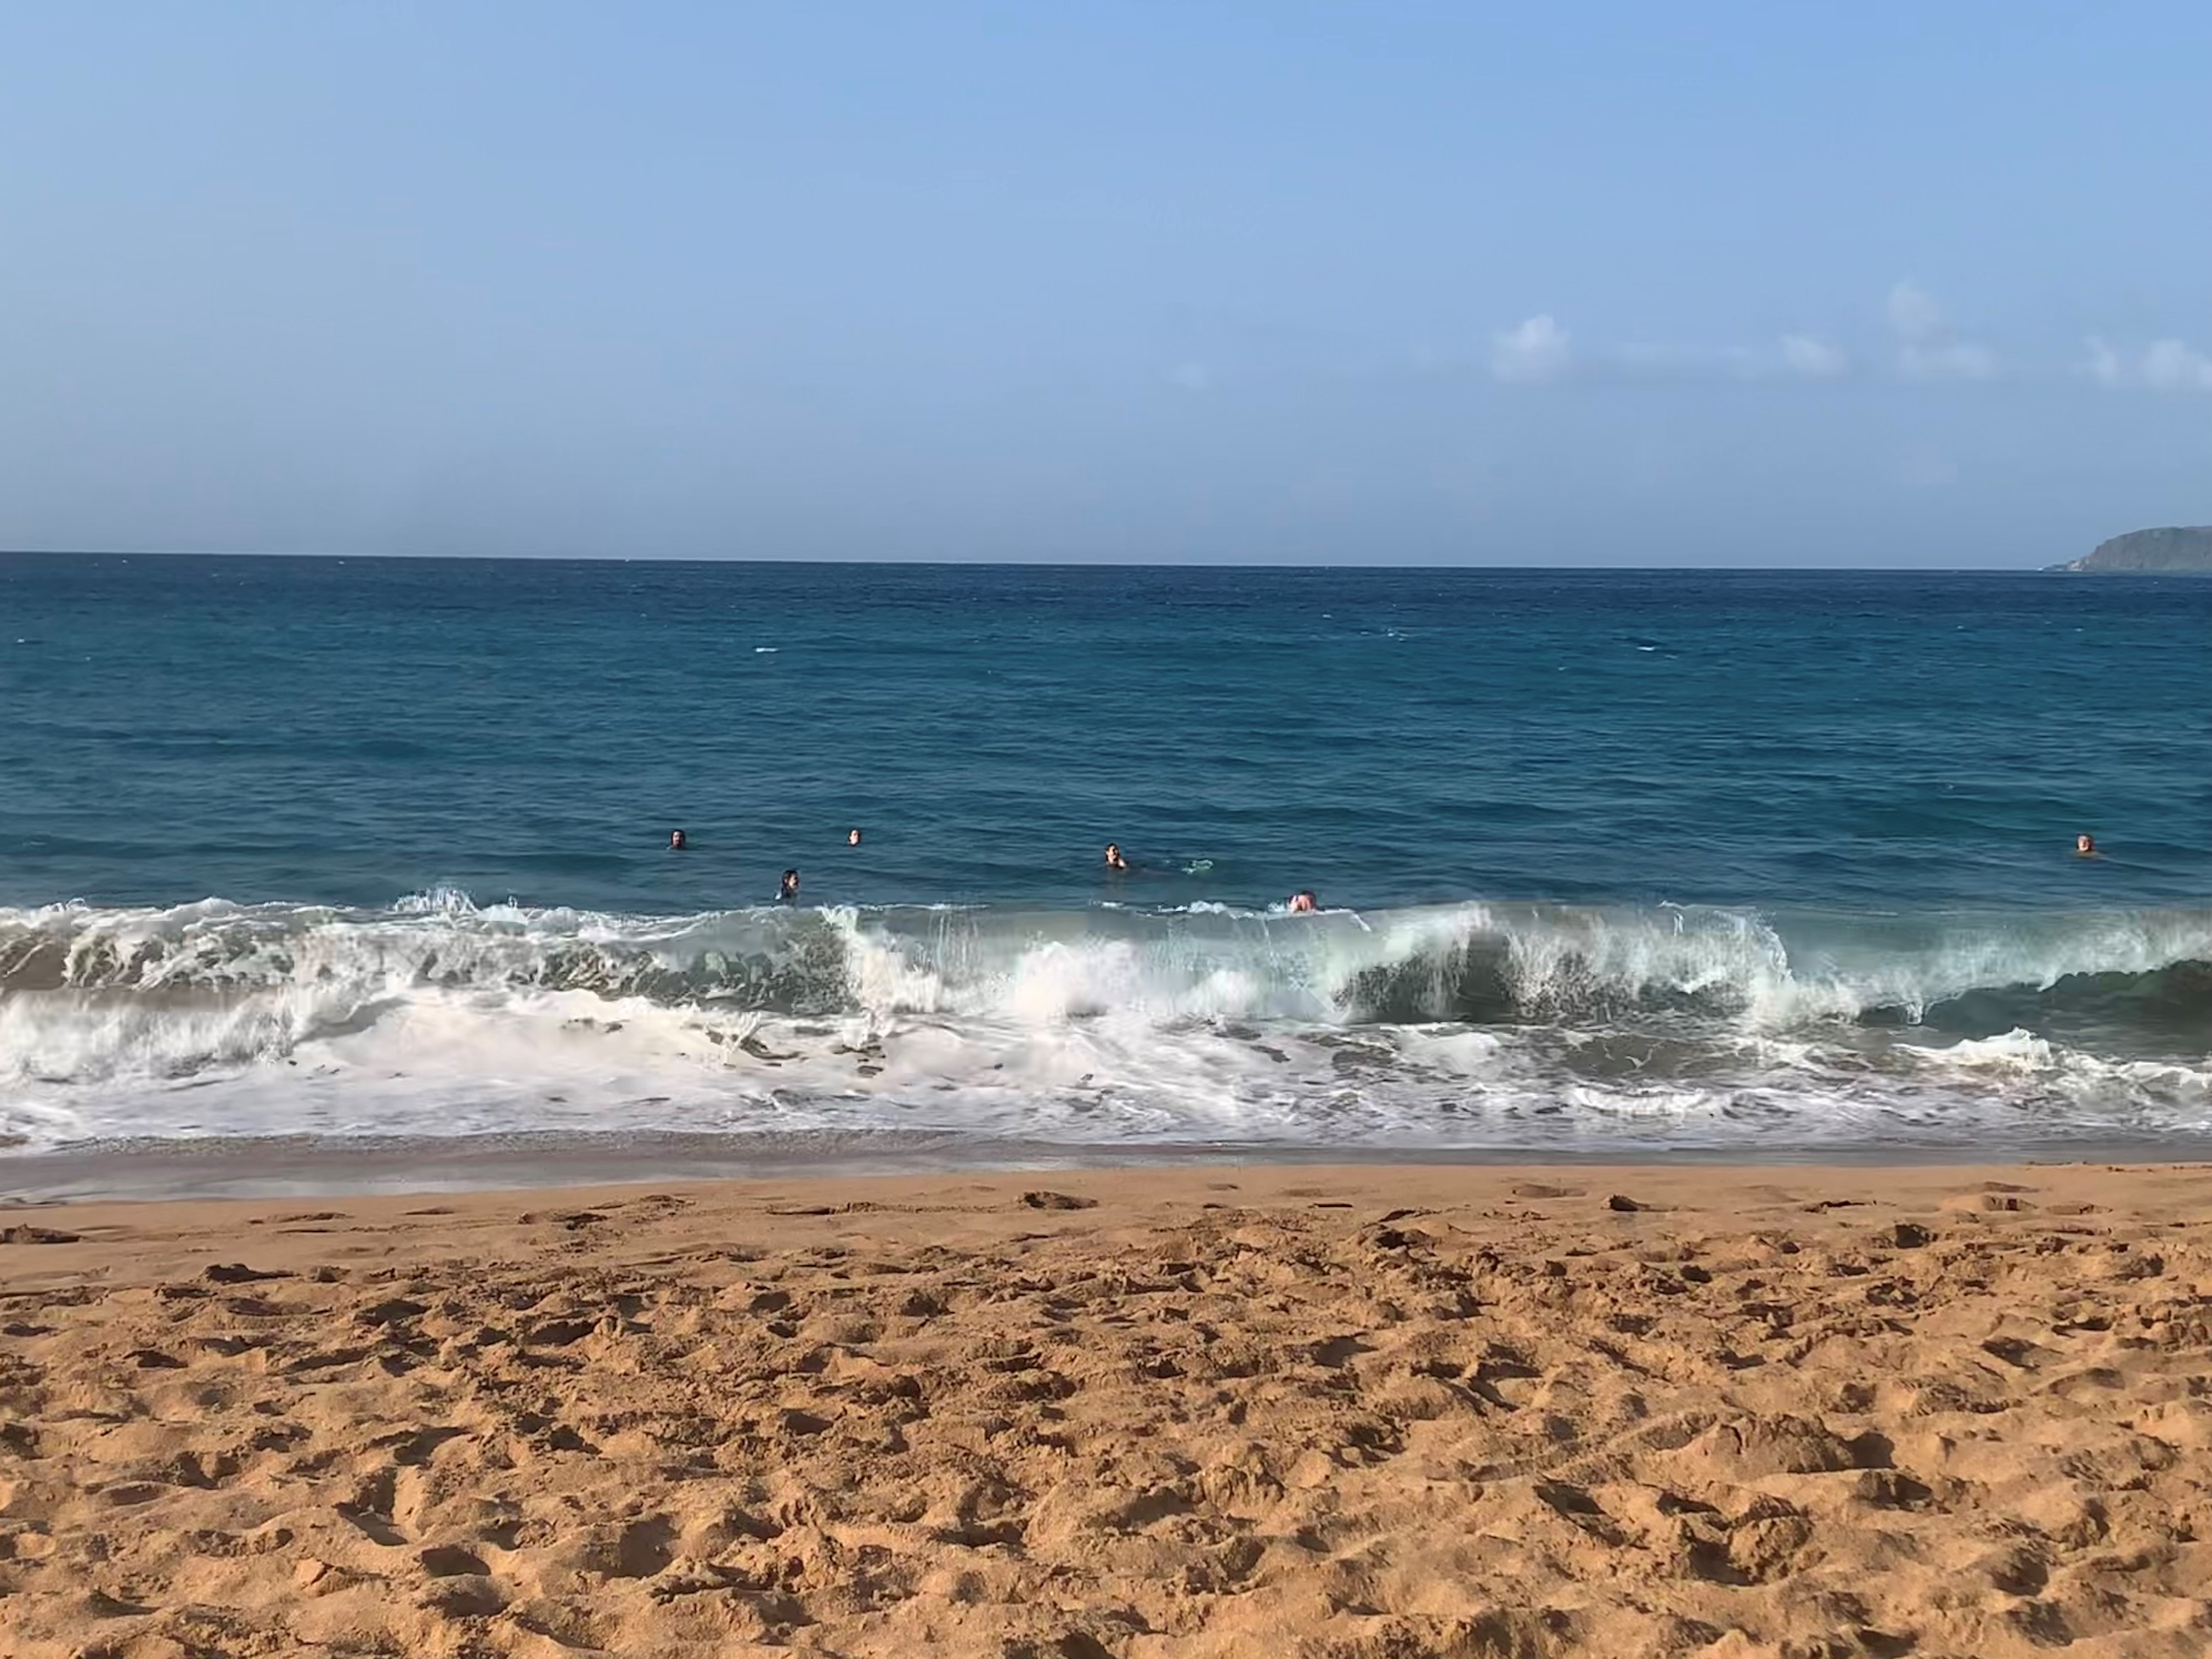     Deshaies : la baignade de nouveau autorisée sur la plage de Grande-Anse

